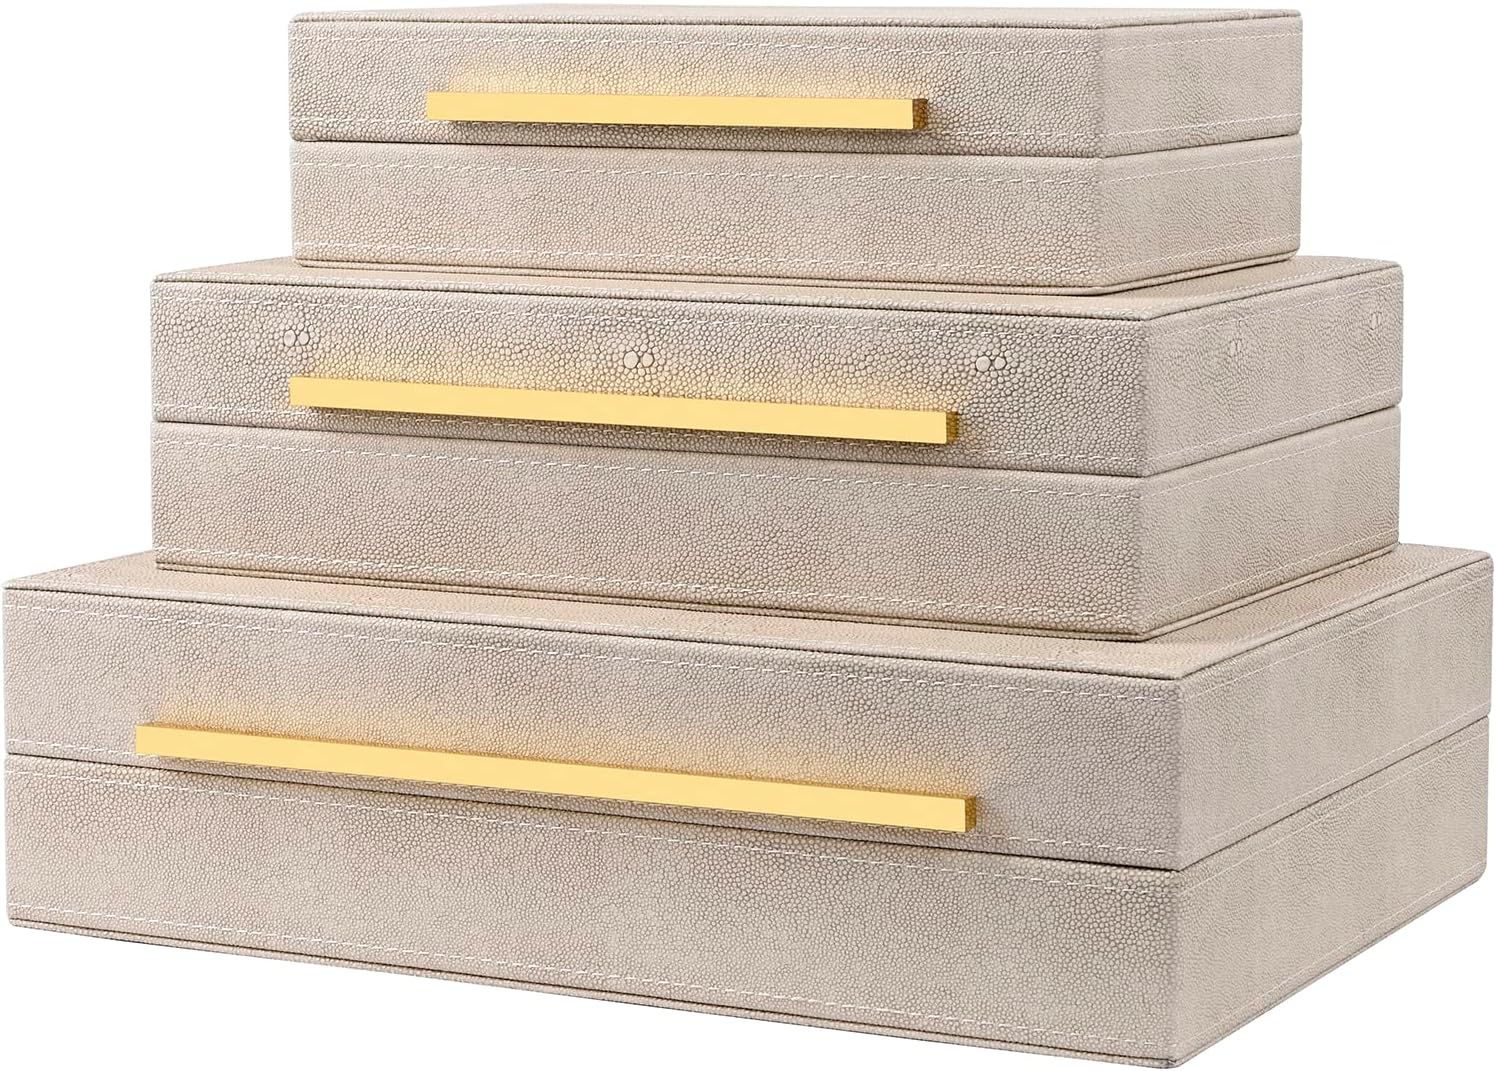 ZIKOUL Ivory Shagreen Box Set Of 3 Faux Leather Decorative Boxes, Large Modern Nesting Storage De... | Amazon (US)